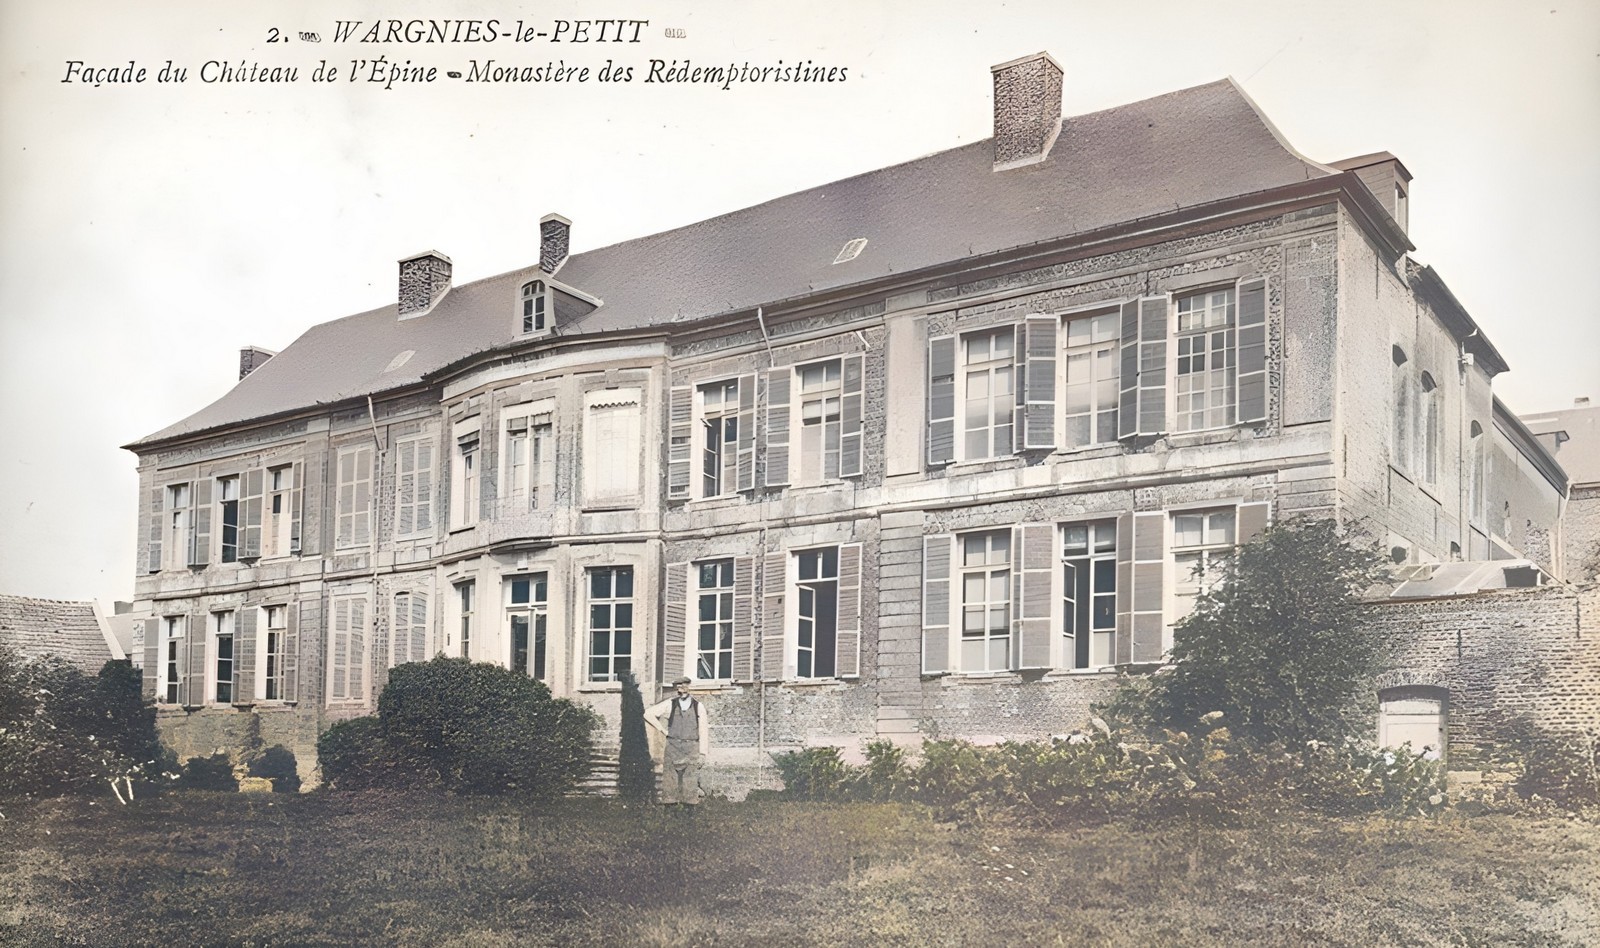 Le château de l'Epine à Wargnies le Petit, la façade arrière sur une carte postale ancienne.